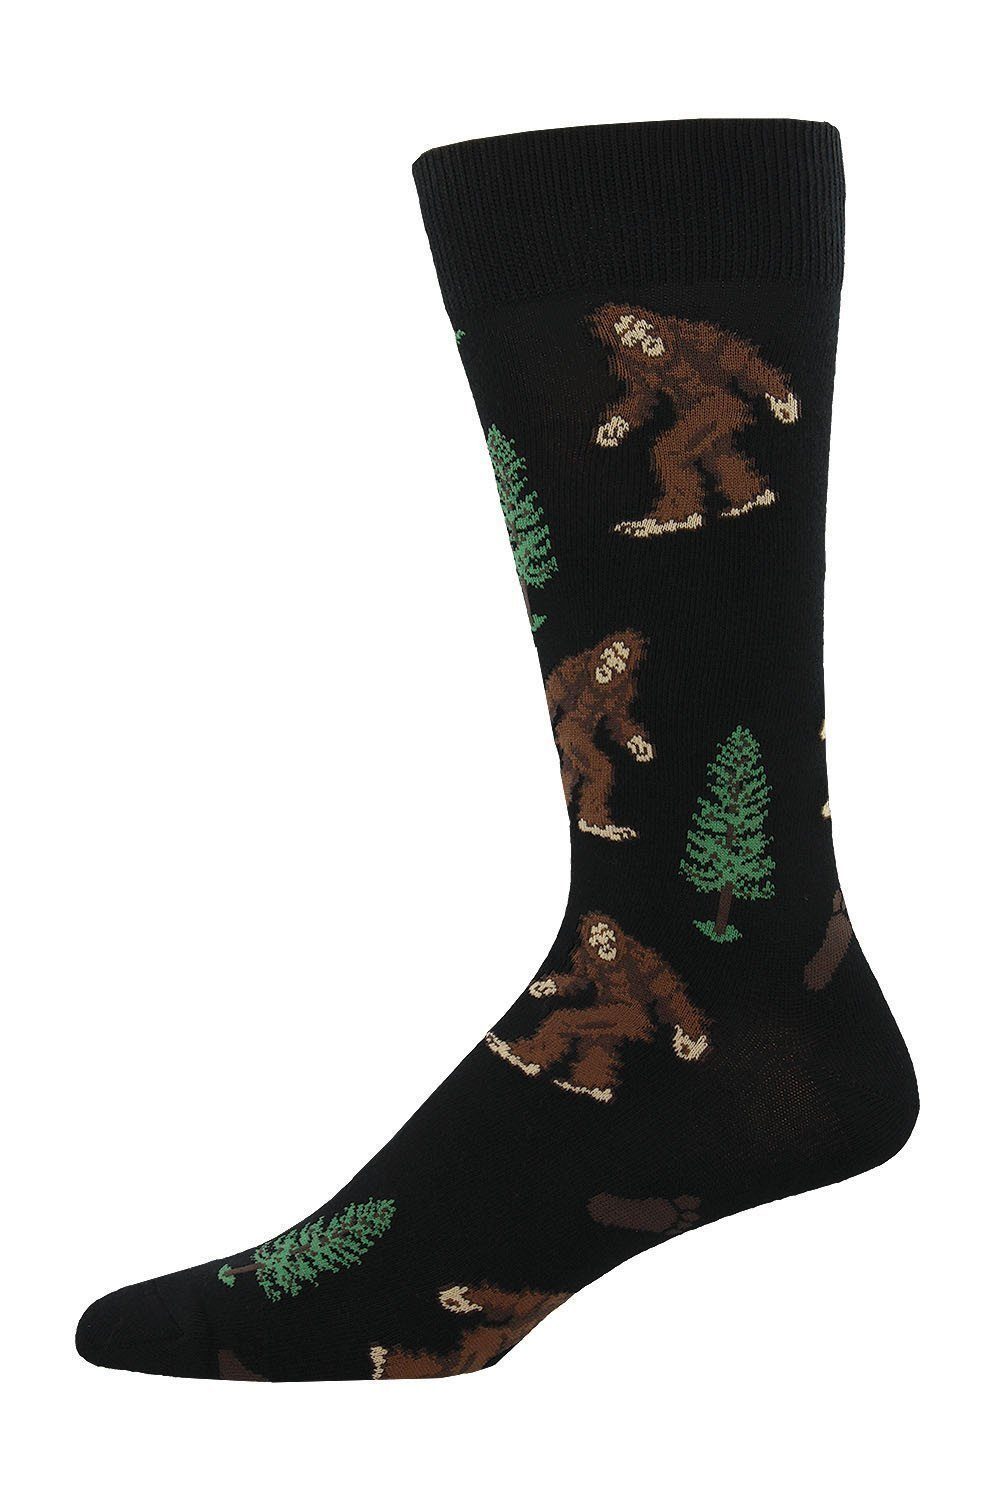 Socksmith - Bigfoot Crew Socks | Men's - Knock Your Socks Off